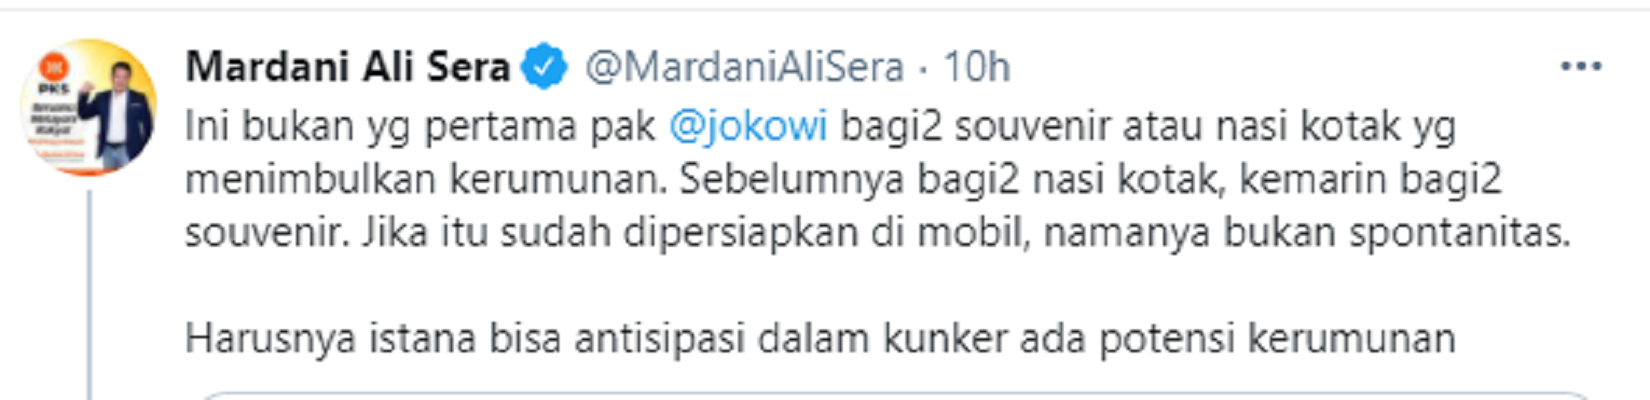 Cuitan Mardani Ali Sera tanggapi kerumunan saat kunjungan kerja Jokowi ke NTT, Selasa 23 Februari 2021.